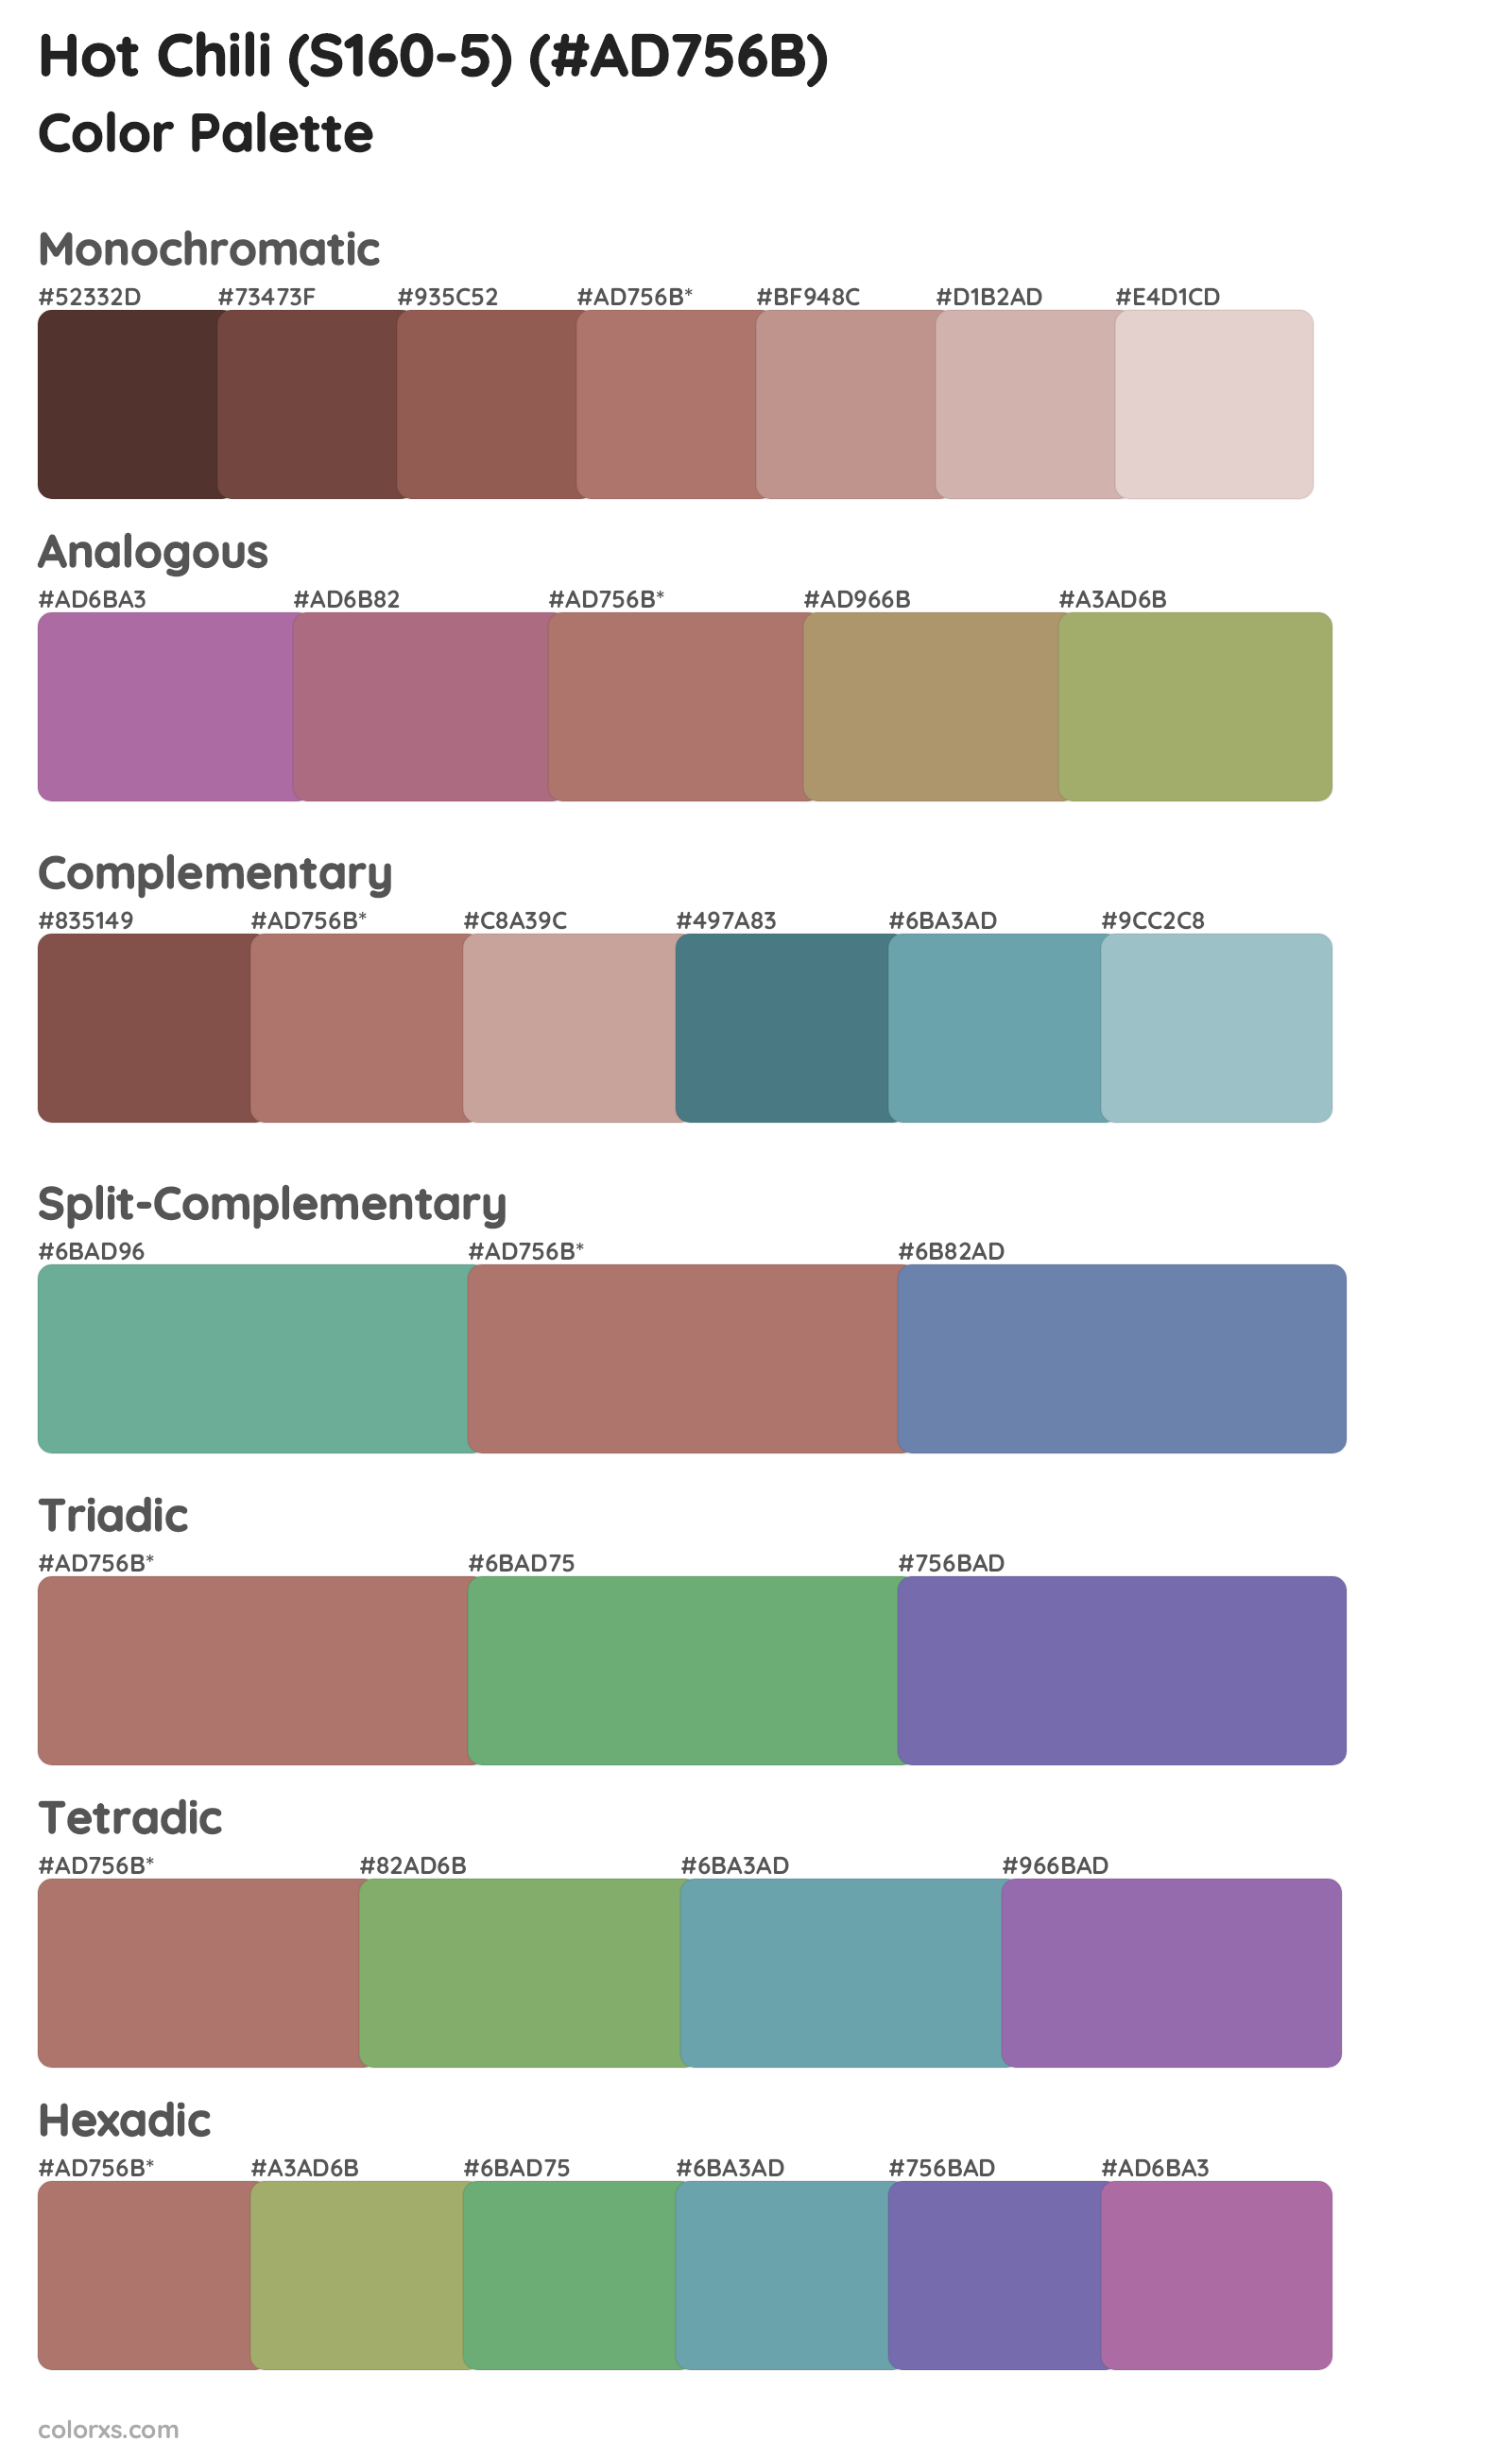 Hot Chili (S160-5) Color Scheme Palettes